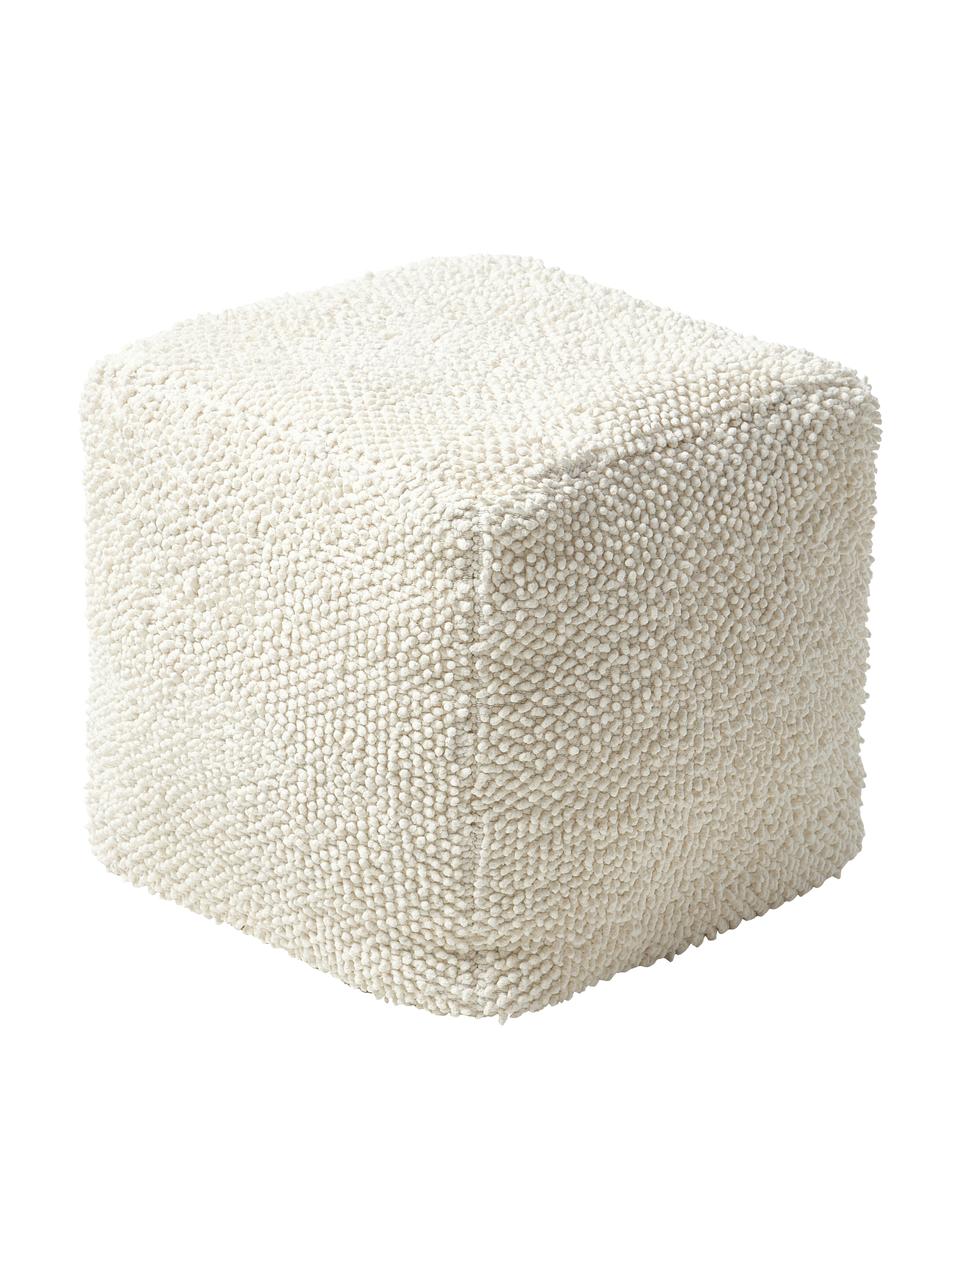 Puf de algodón Indi, Funda: 100% algodón, Blanco crema, An 45 x Al 45 cm